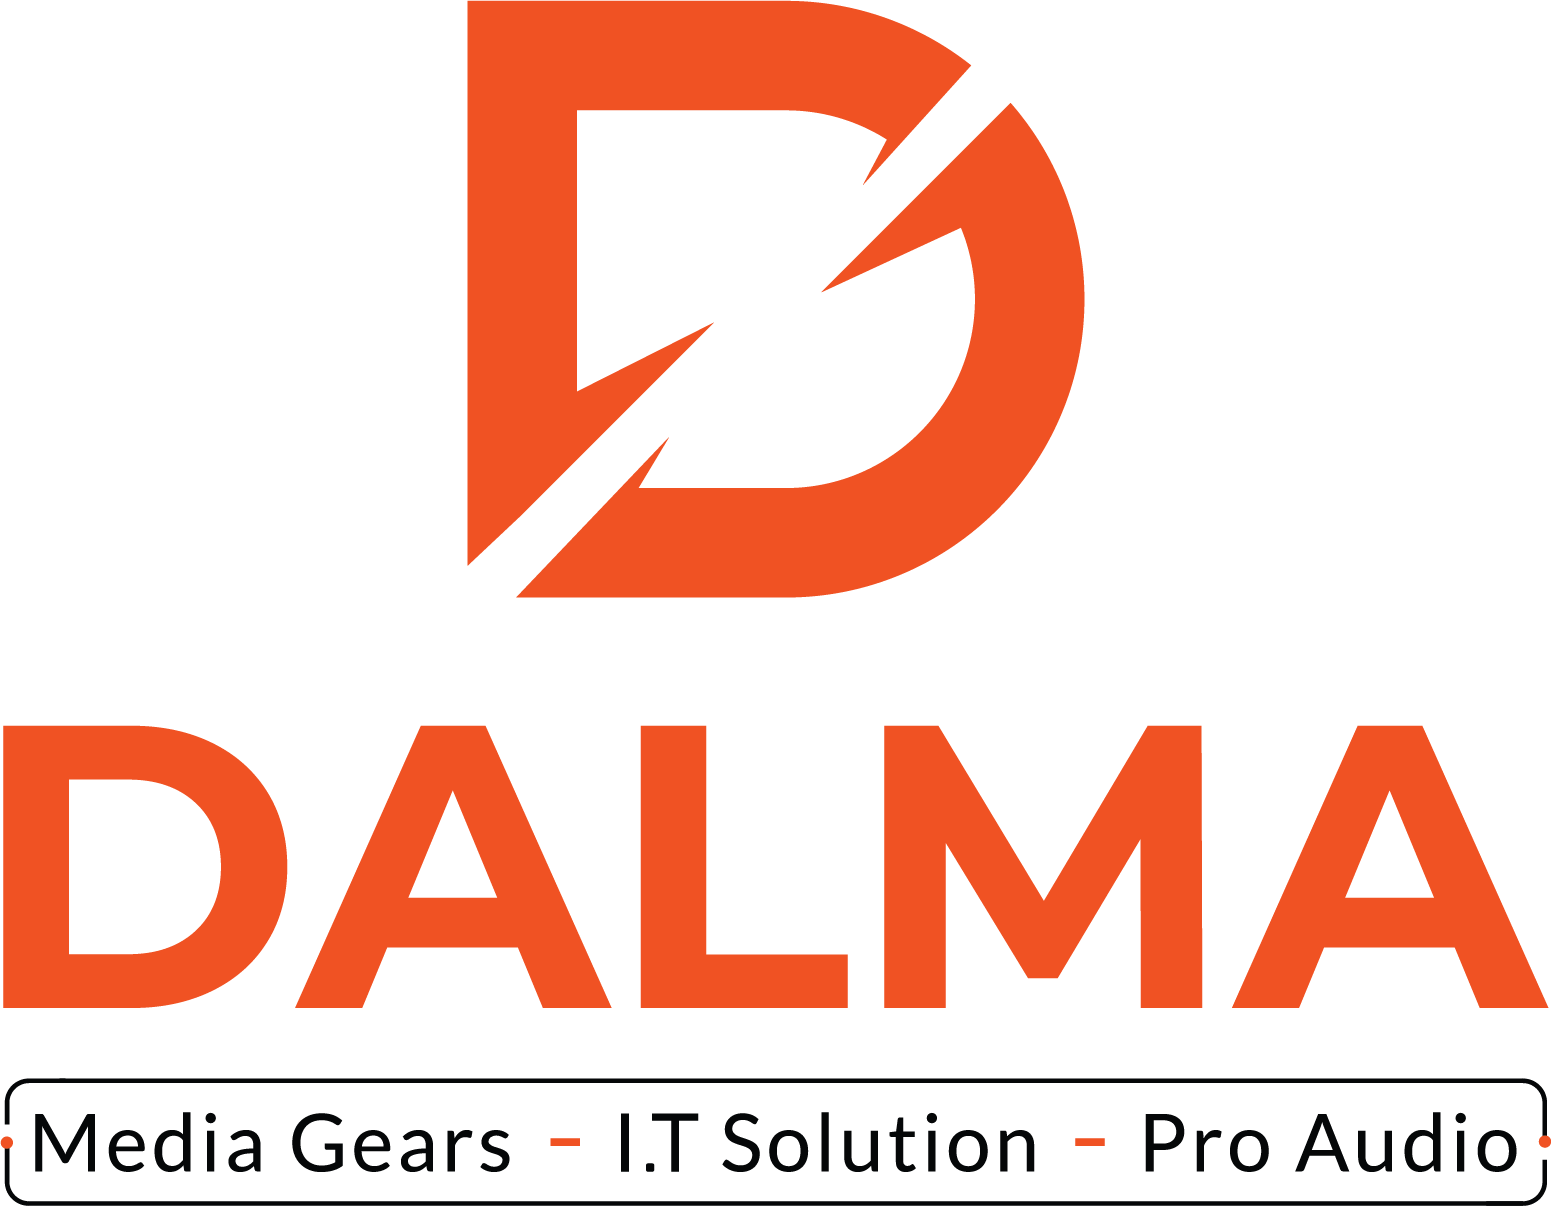 Dalma Electronics LLC